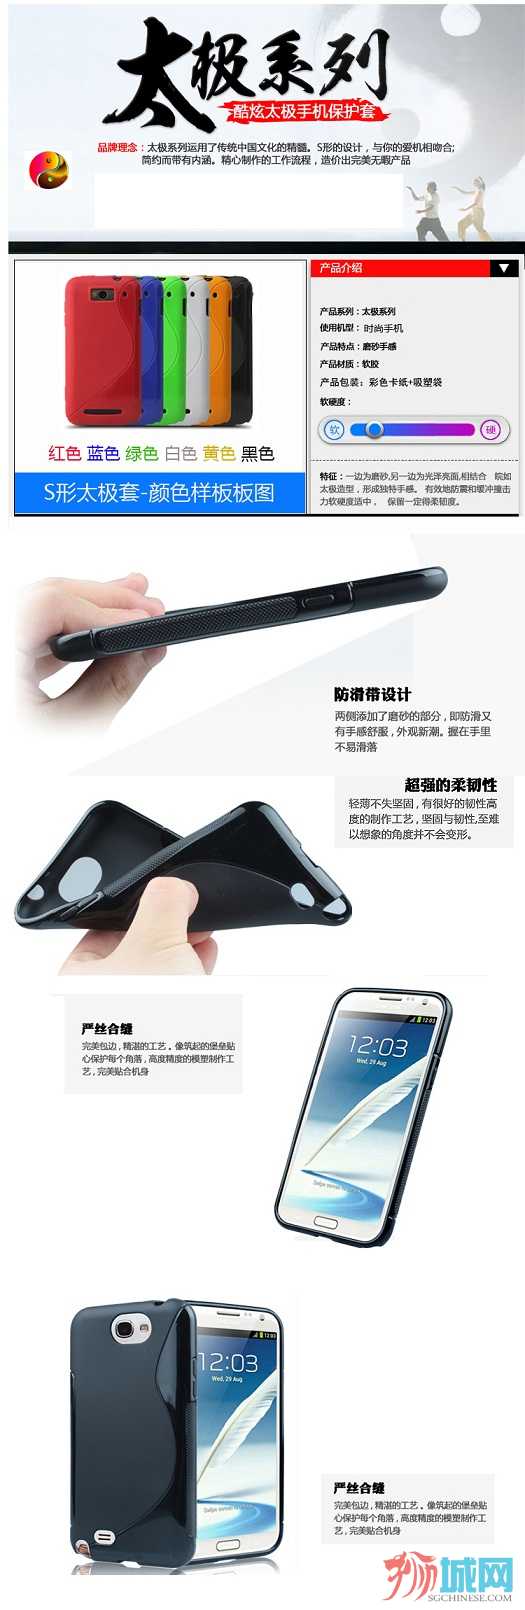 N7100 手机保护壳 磨砂软套 S形太极套.jpg